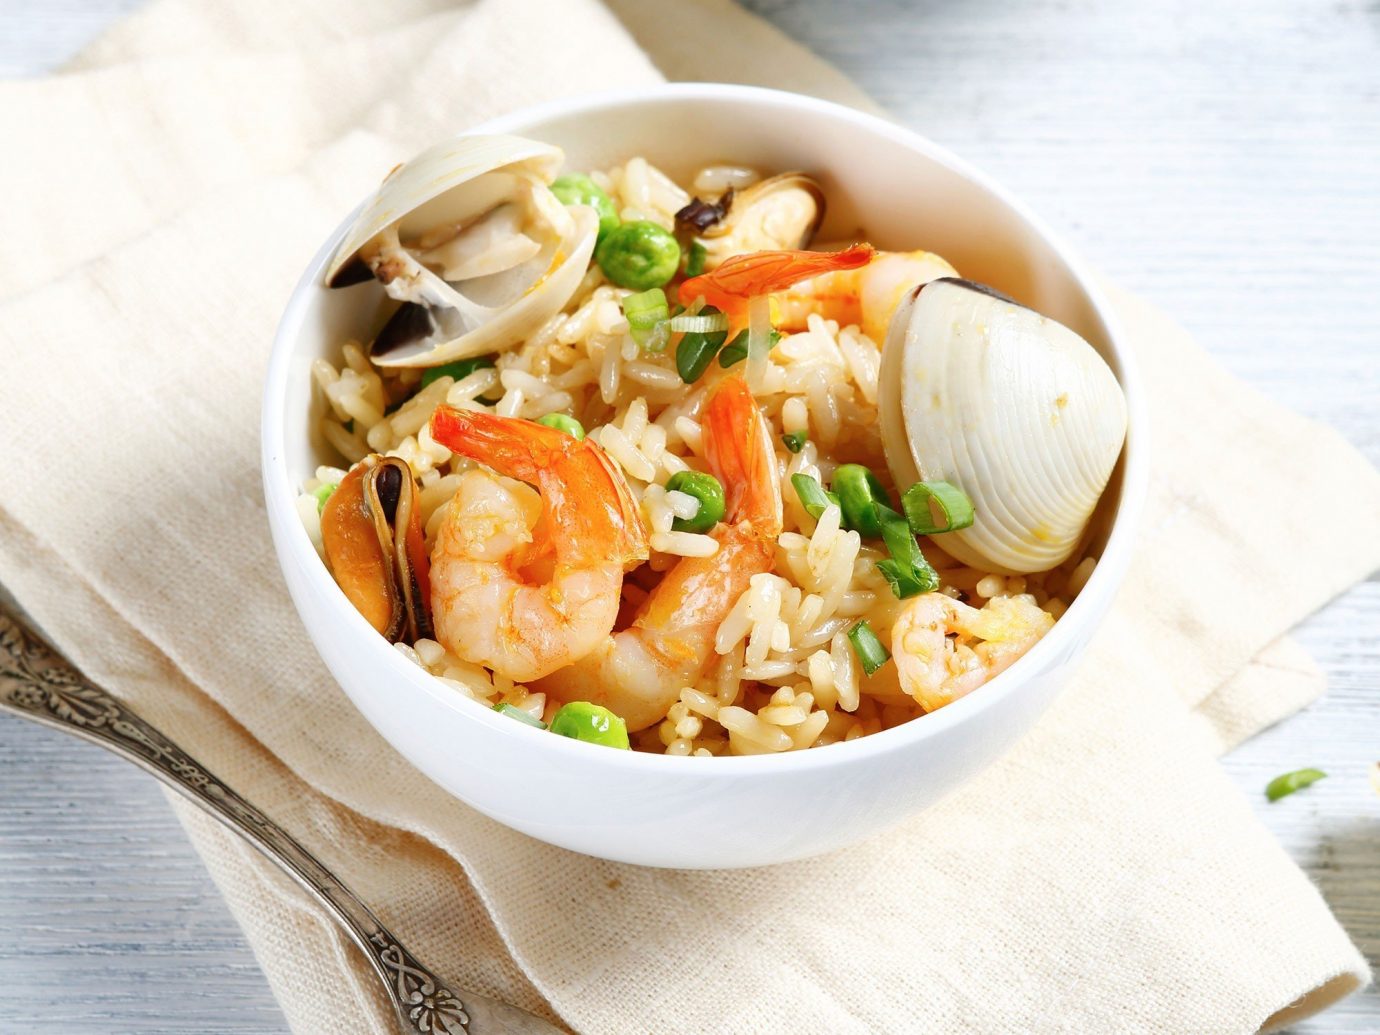 Food + Drink food dish plate cuisine Seafood produce vegetable thai food several